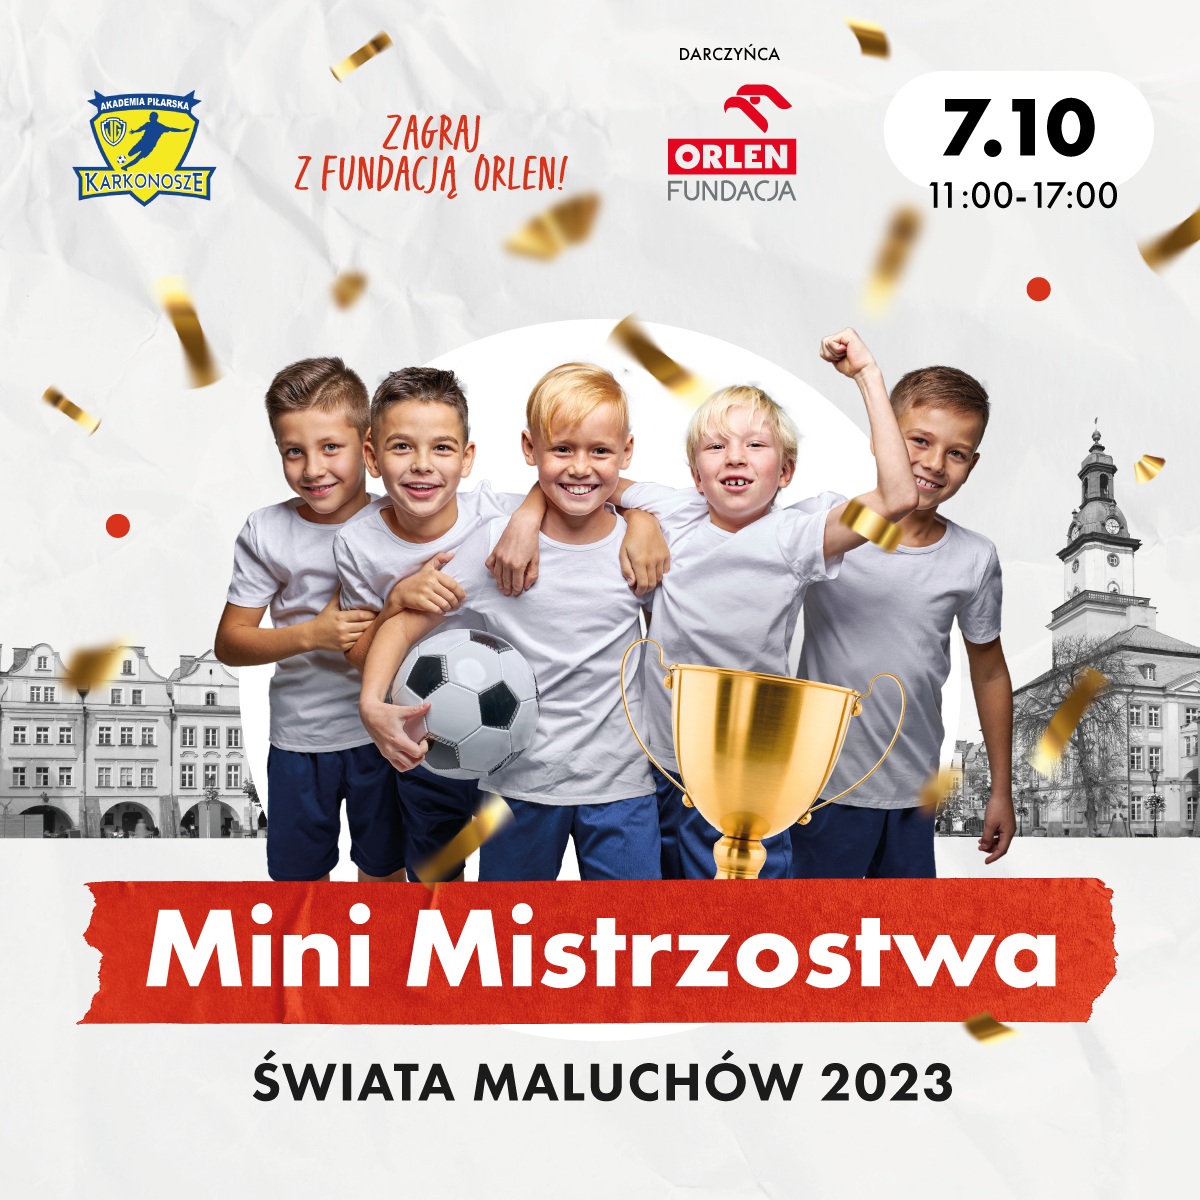 Zapraszamy na Mini Mistrzostwa Świata Maluchów 2023 – Jelenia Góra 07.10.2023r. Galeria Sudecka